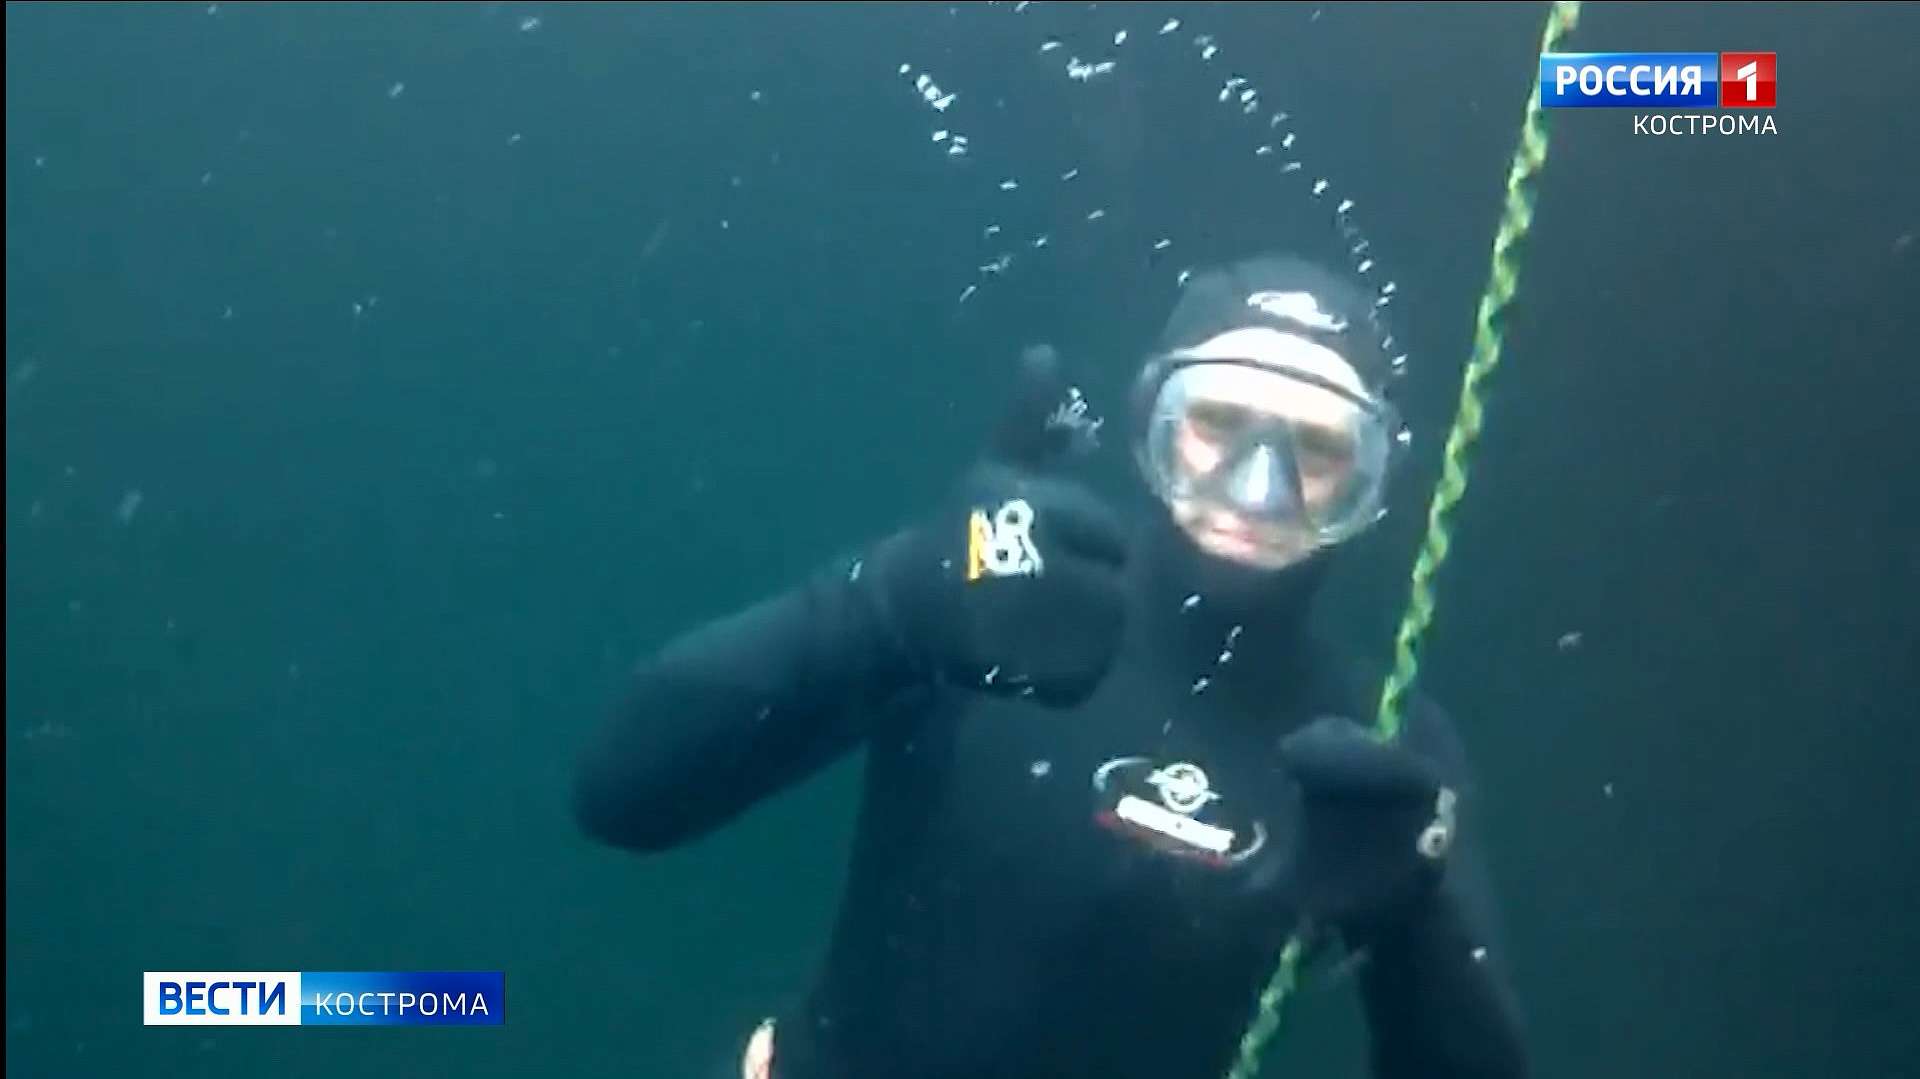 Спасатели-водолазы в Костроме начали подготовку к новому купальному сезону